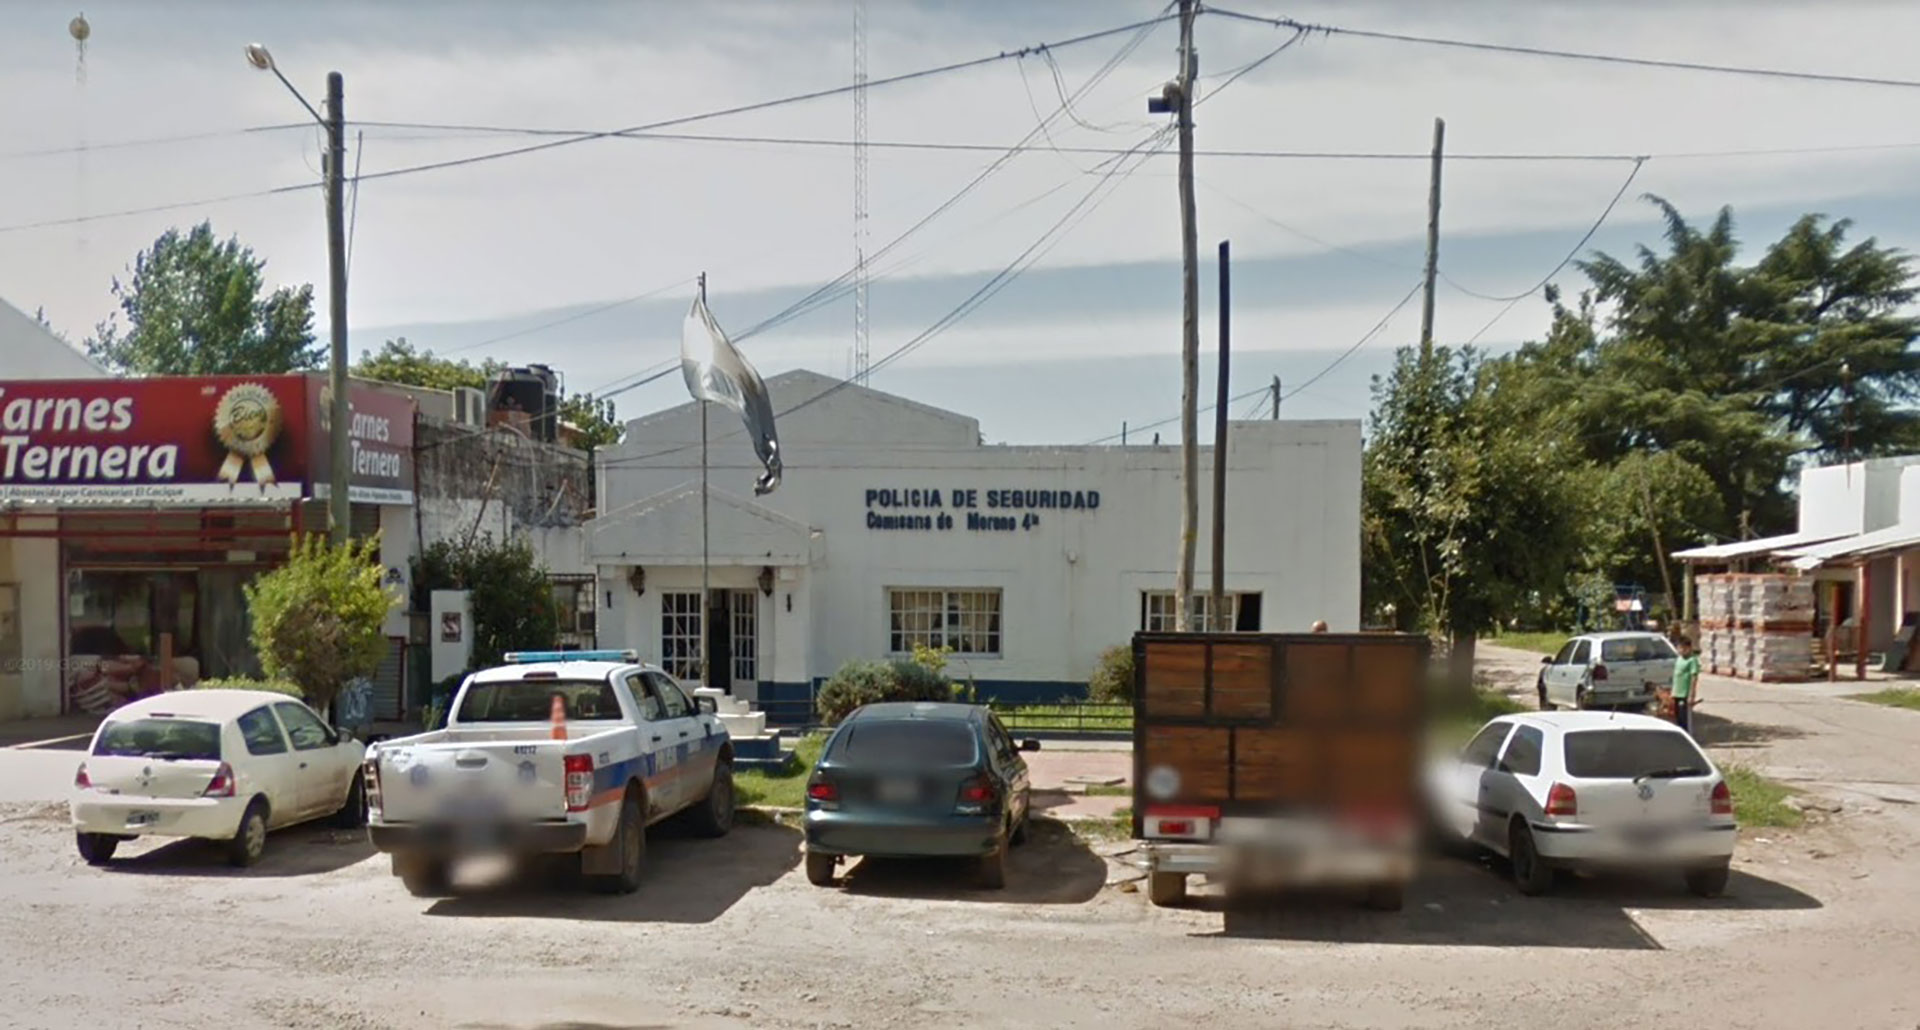 Al menos 30 presos se amotinaron en una comisaría de Moreno: tienen a un policía como rehén